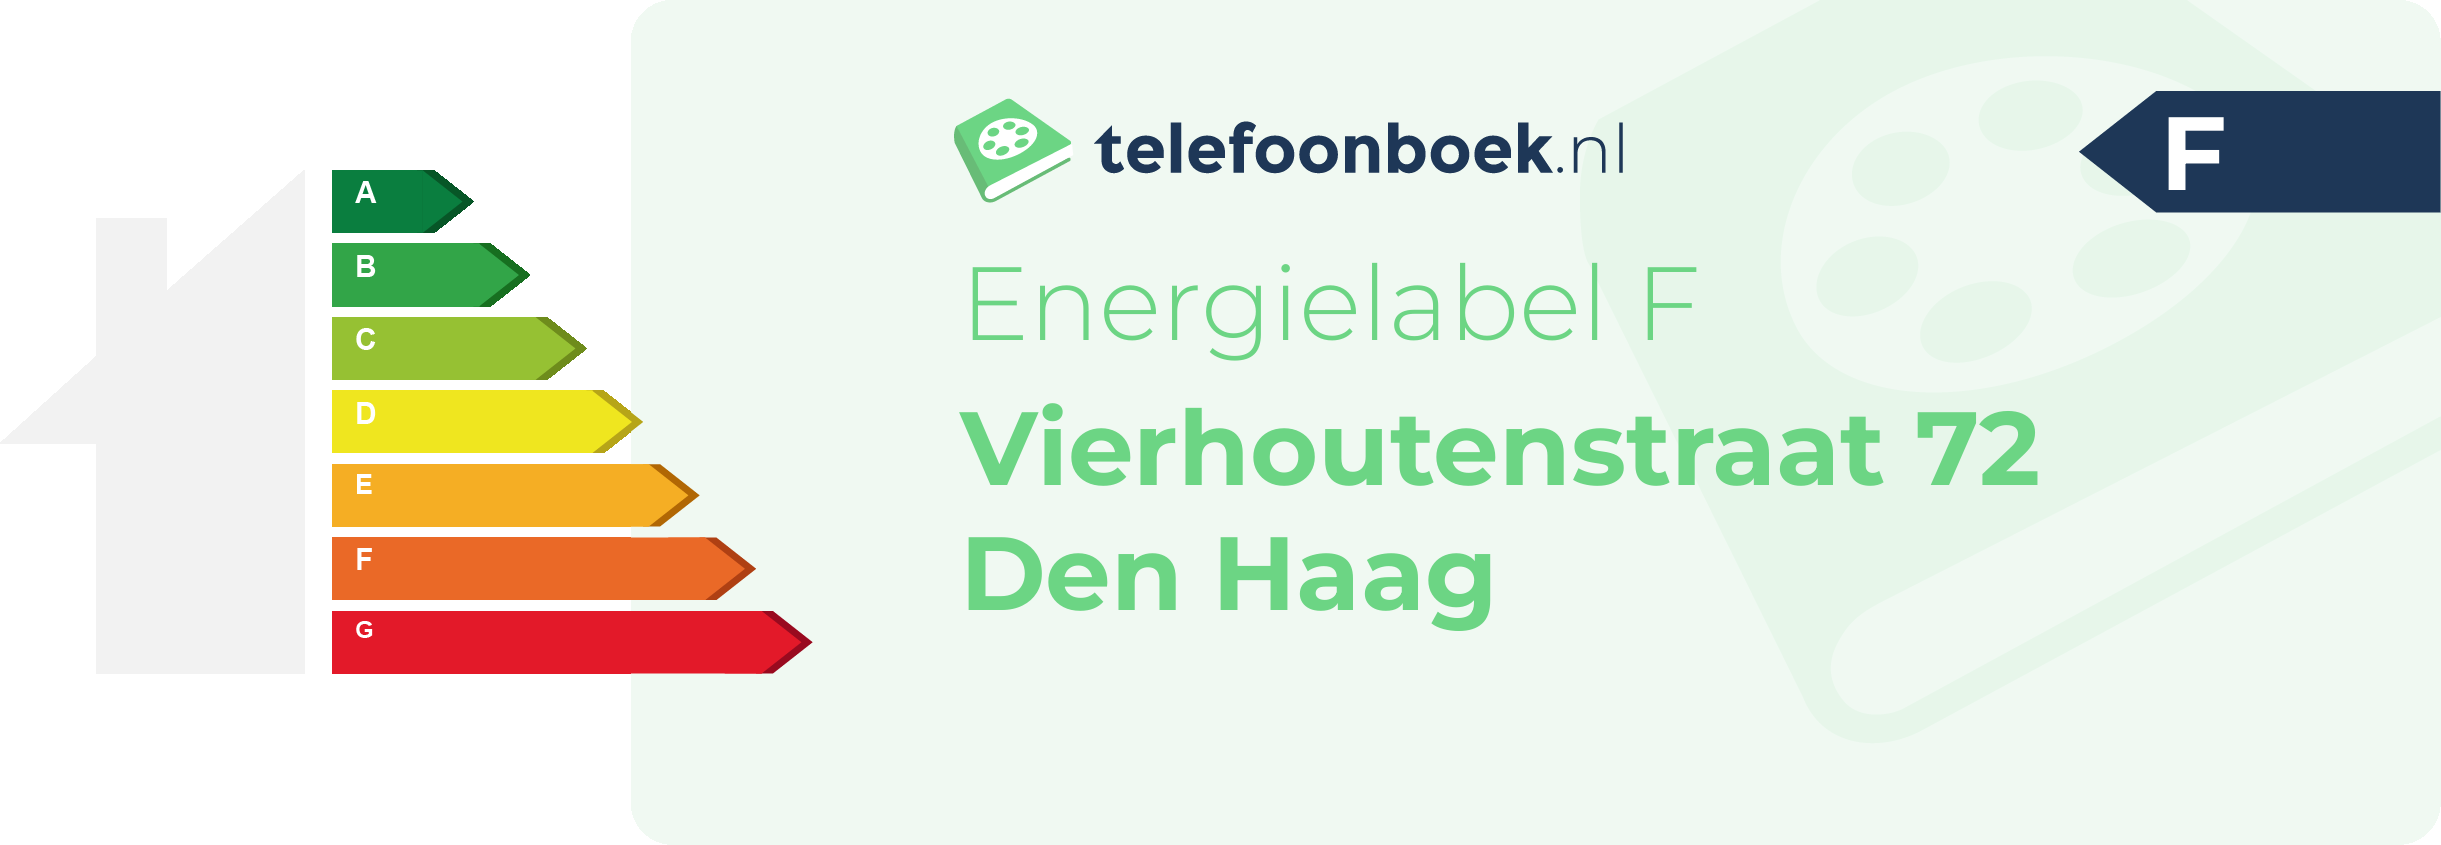 Energielabel Vierhoutenstraat 72 Den Haag